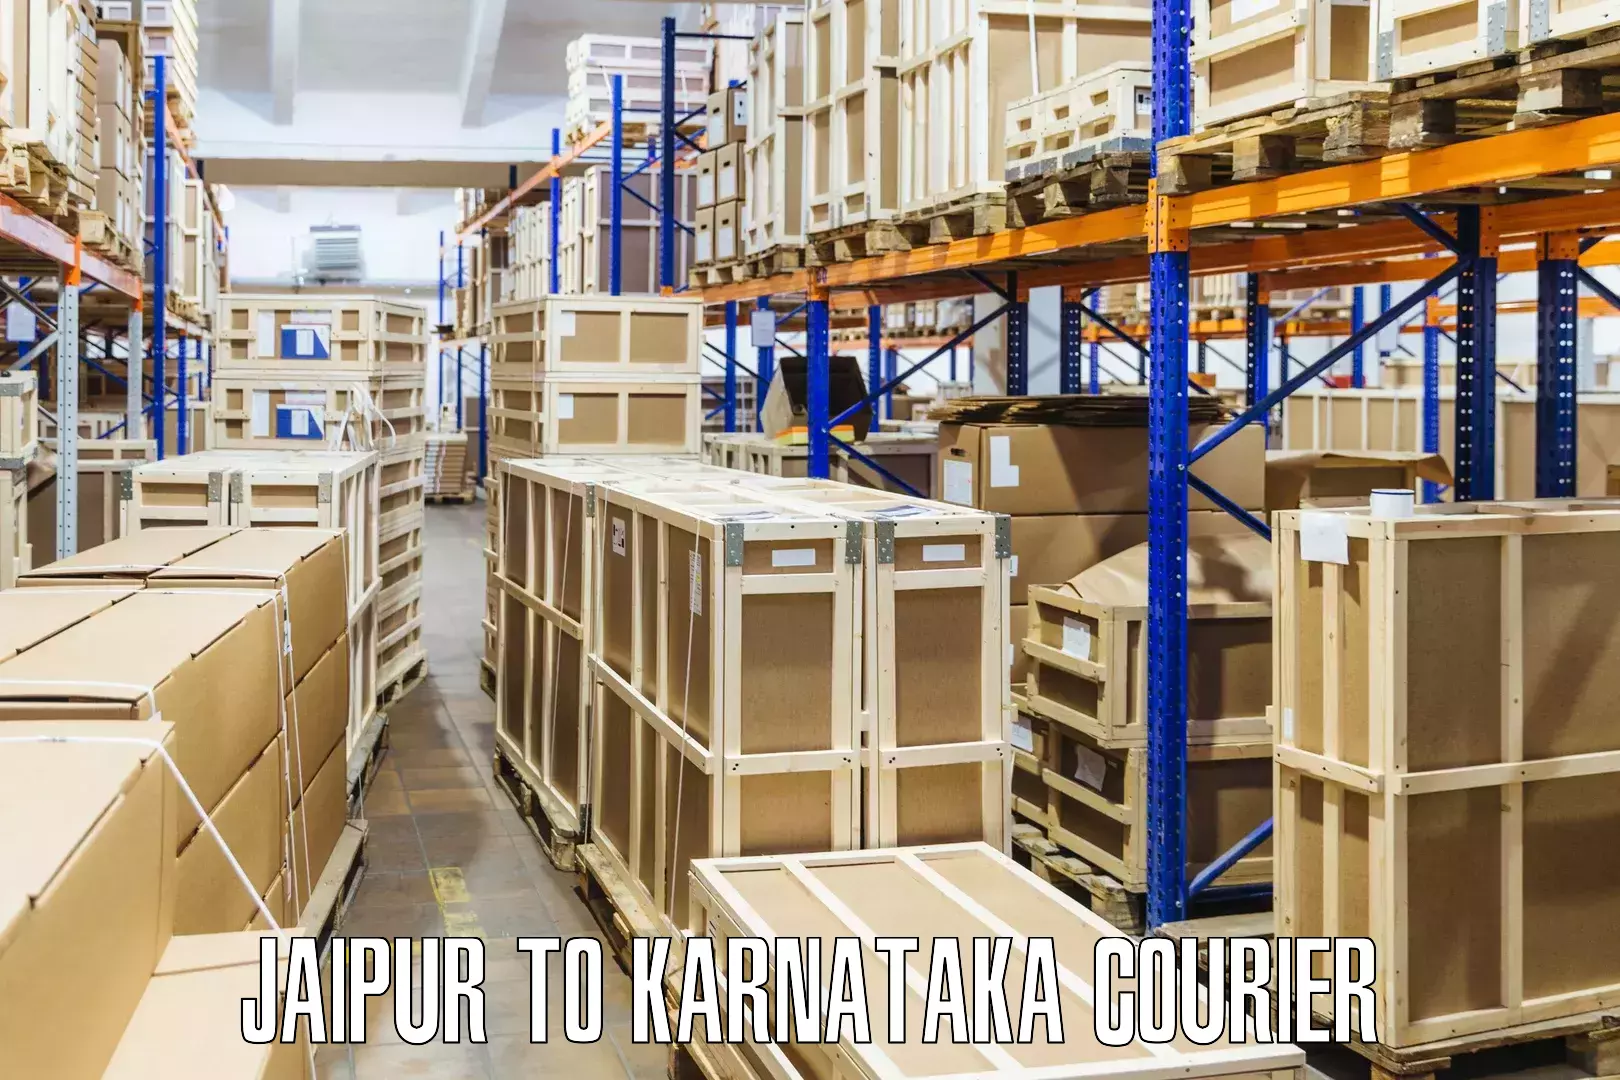 Nationwide shipping coverage Jaipur to Karnataka